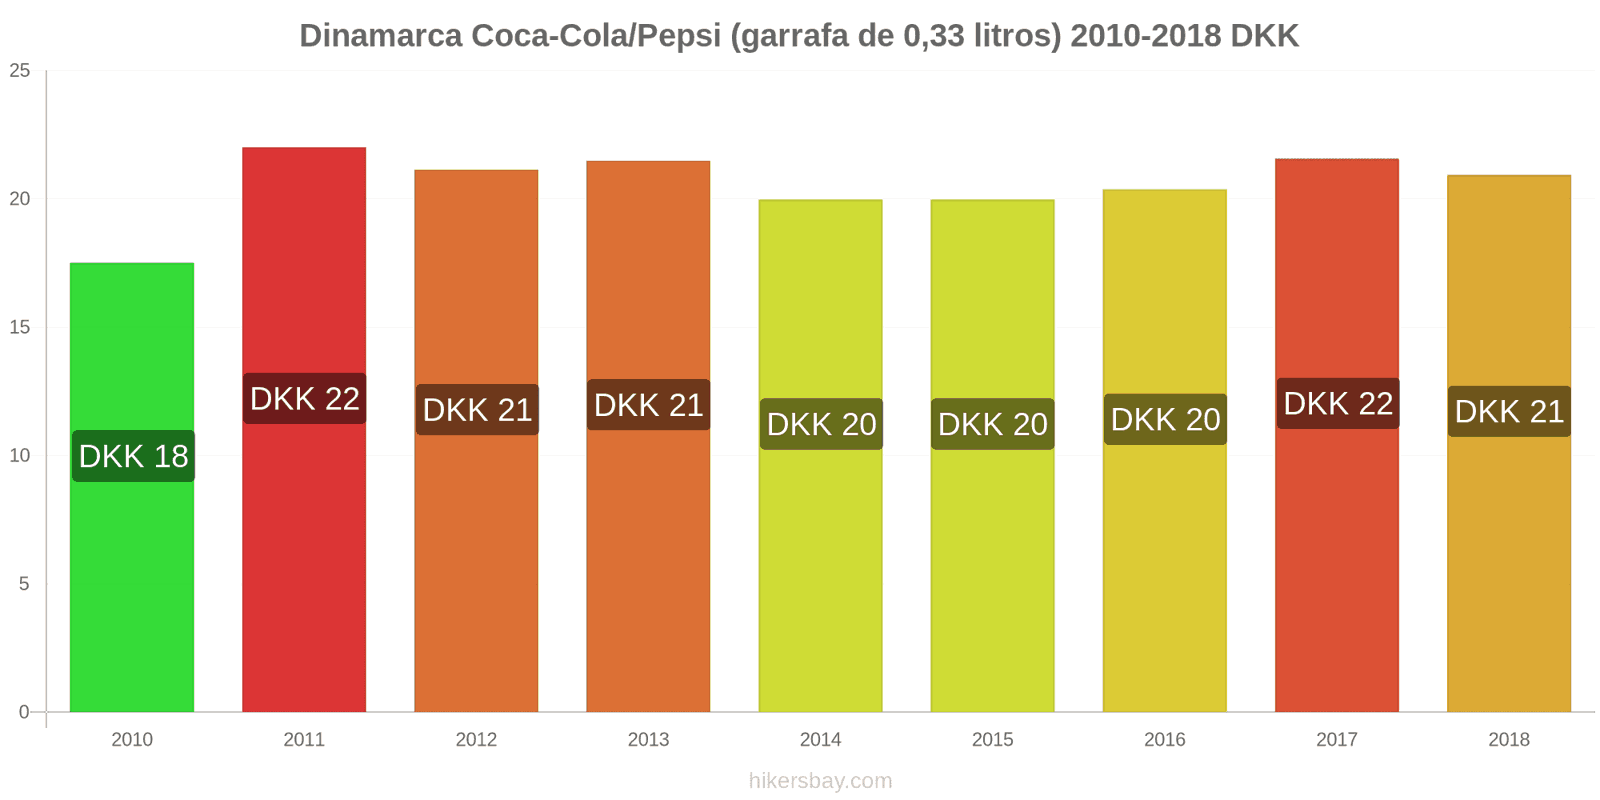 Dinamarca mudanças de preços Coca-Cola/Pepsi (garrafa de 0.33 litros) hikersbay.com